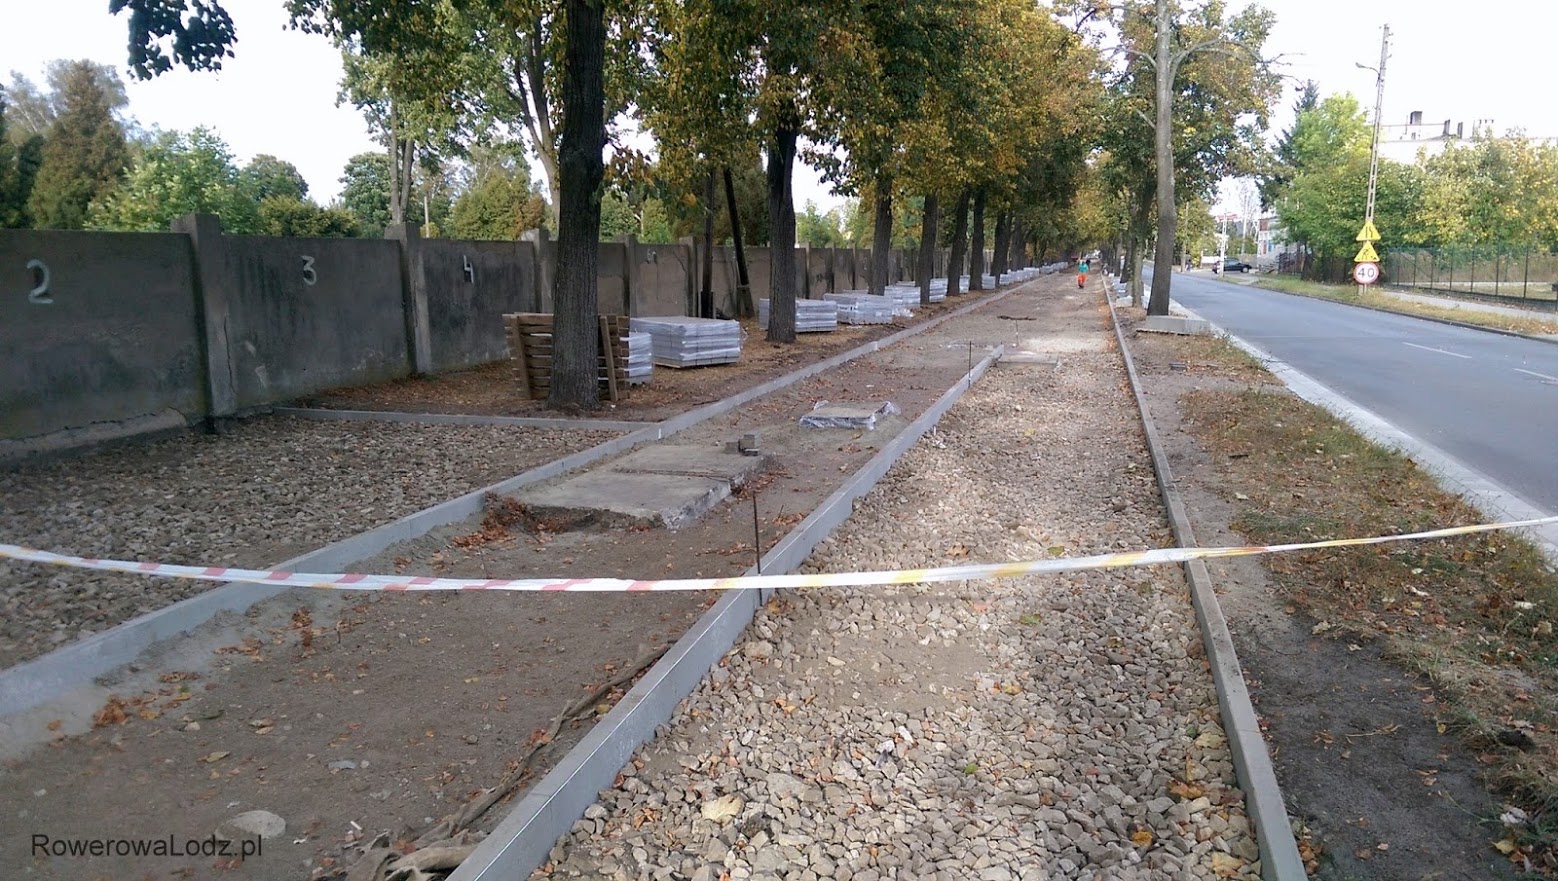 Tuż przed cmentarzem będzie ciąg pieszo-rowerowy, dalej już separowana DDR.